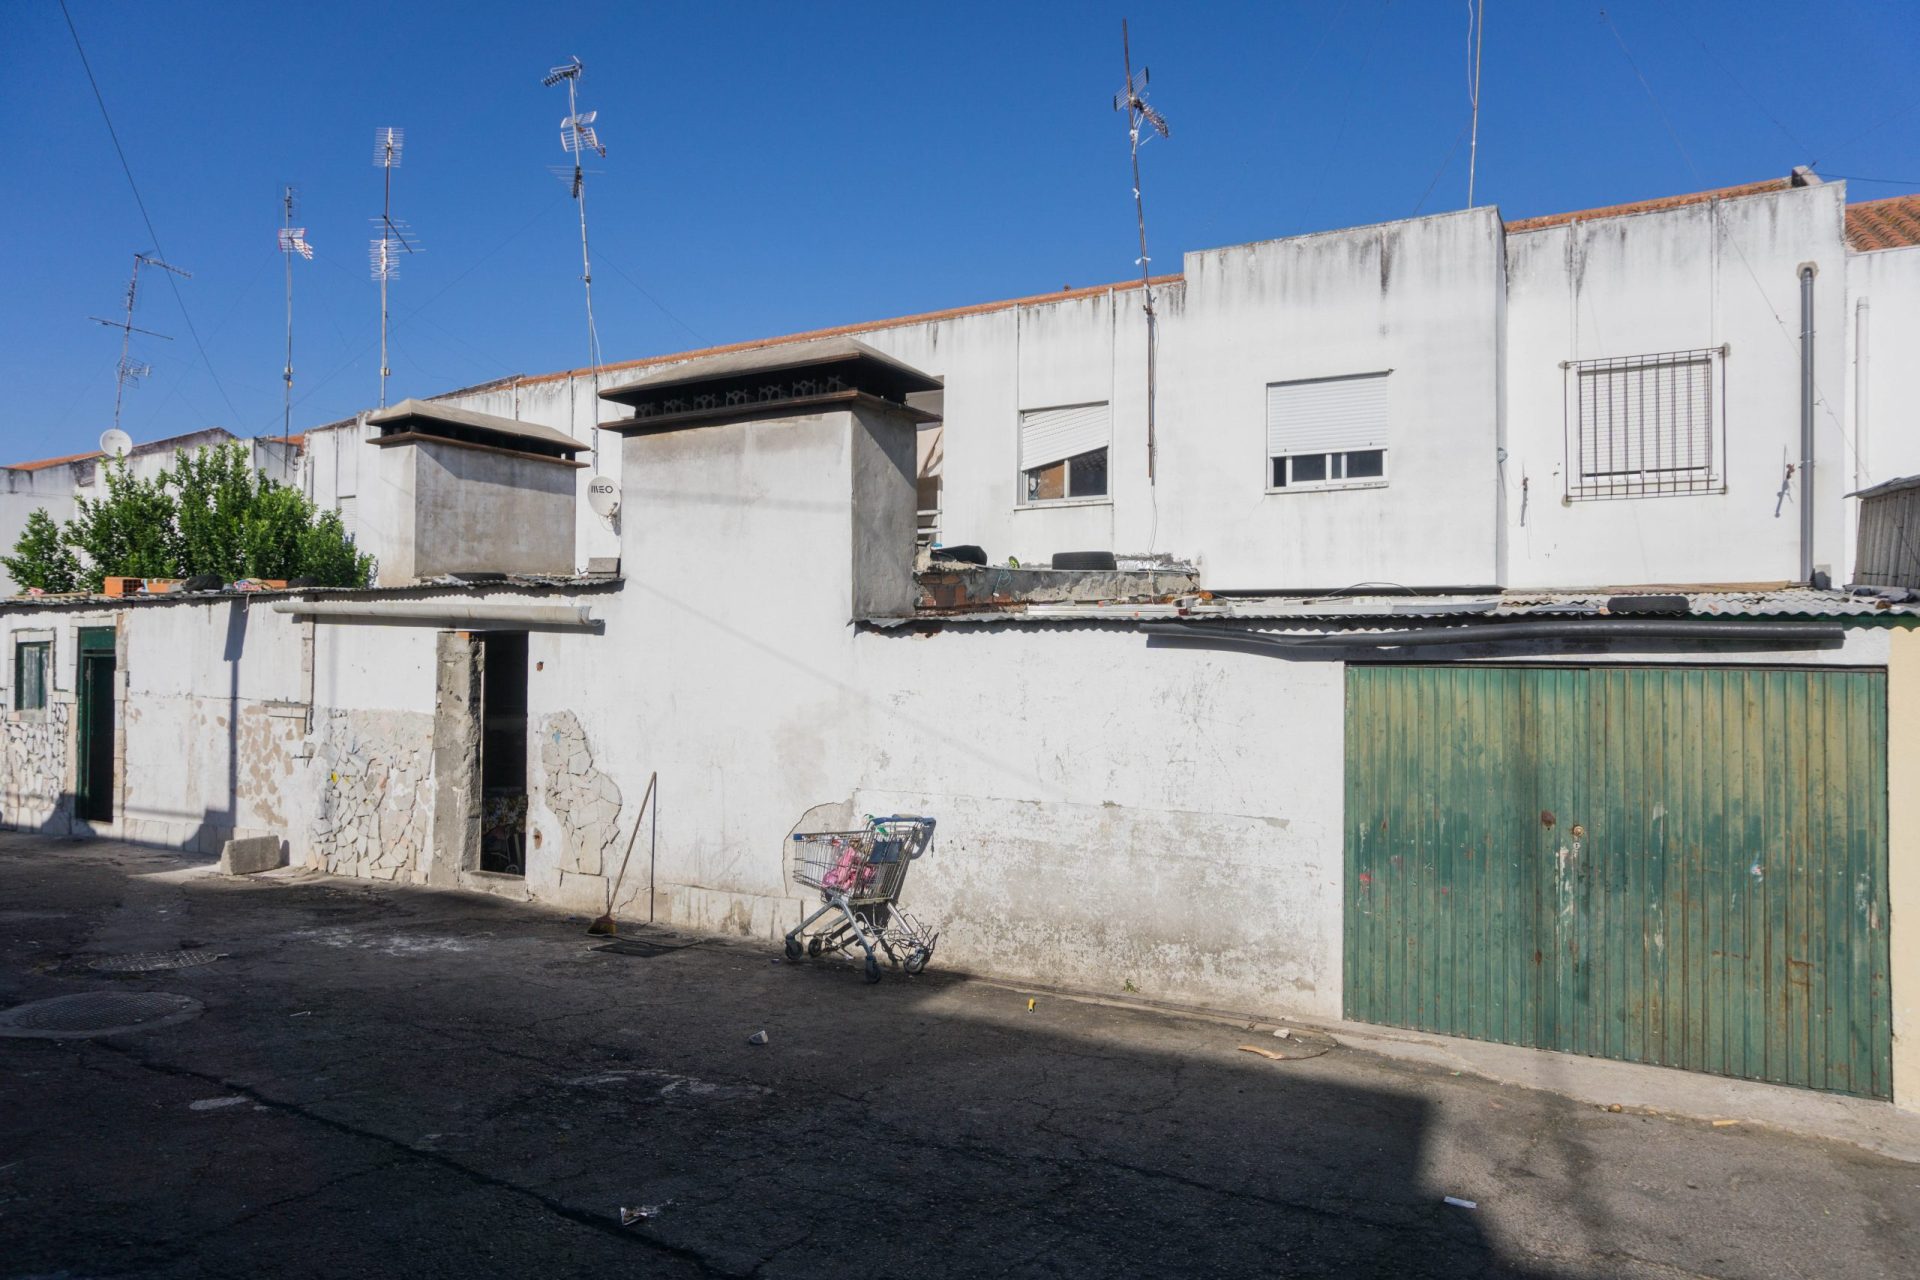 Portugal ainda não garante habitação digna aos ciganos, diz Comité Europeu dos Direitos Sociais